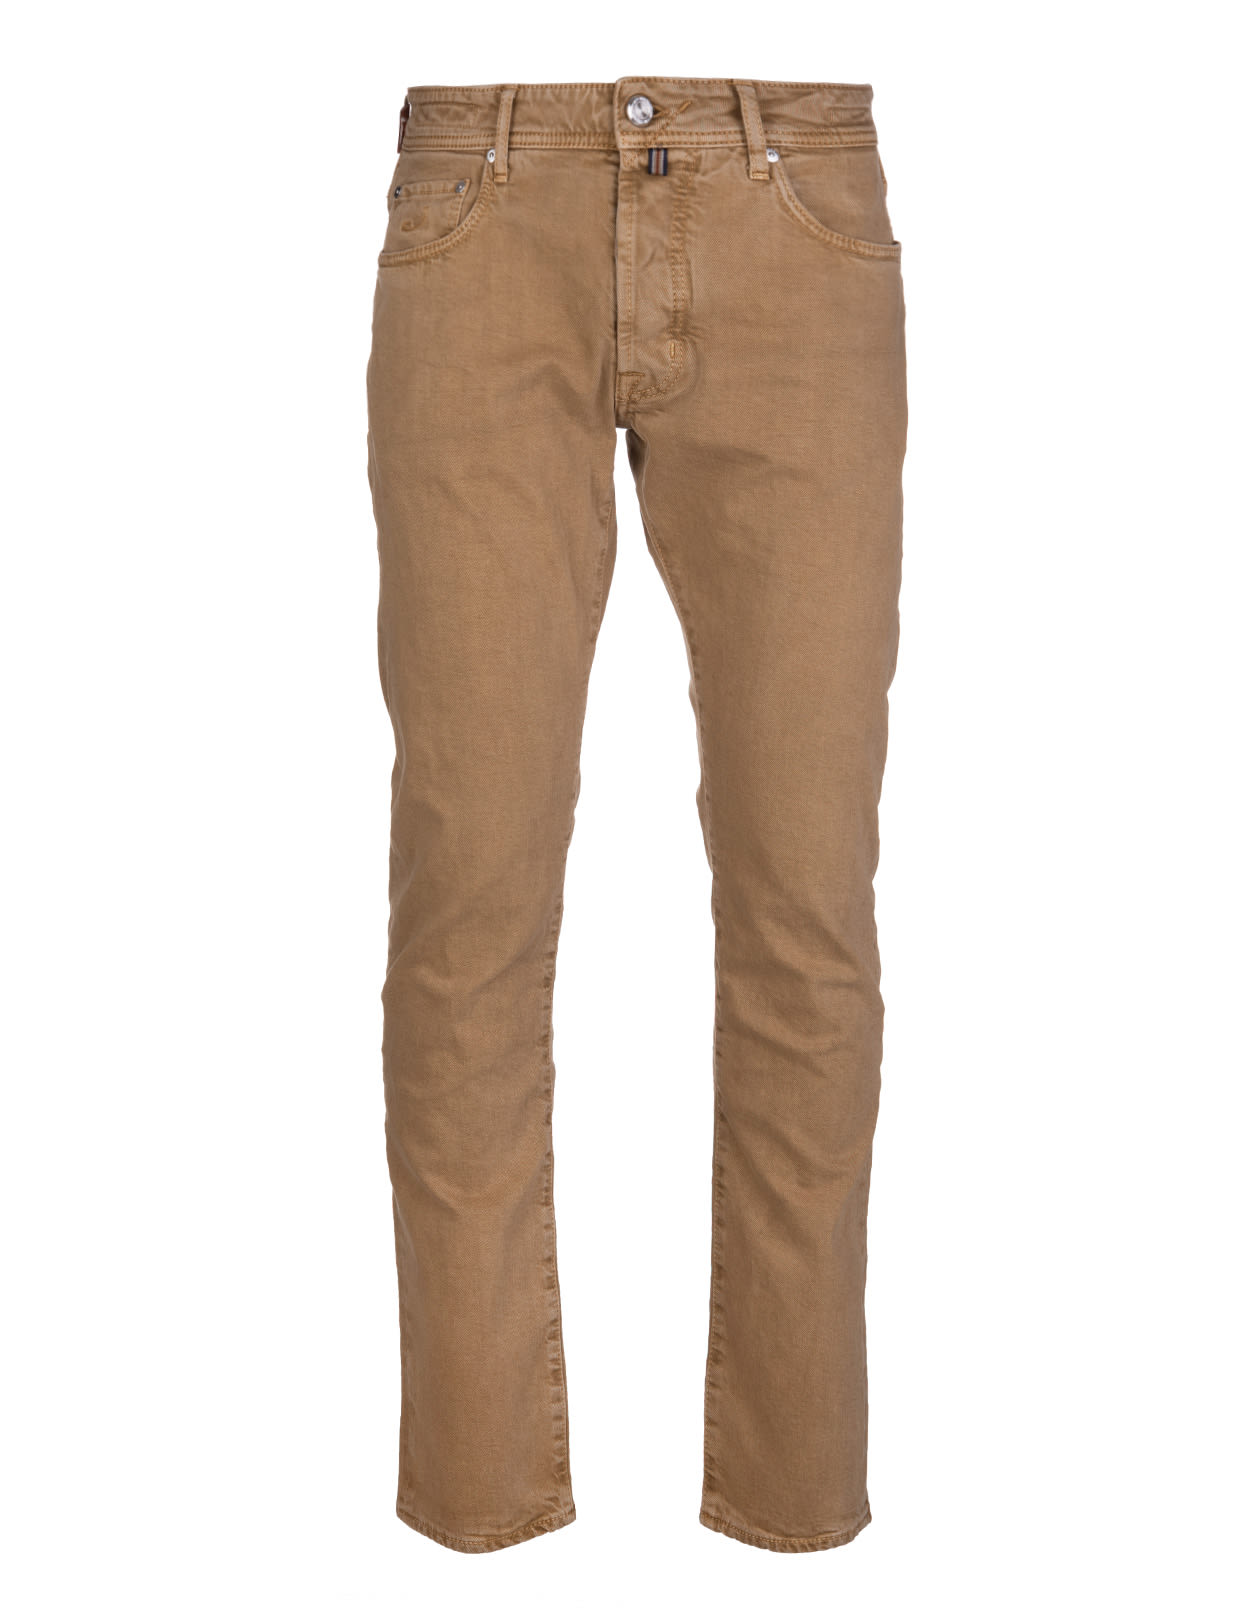 Jacob Cohen Man Camel Bard Ltd Jeans